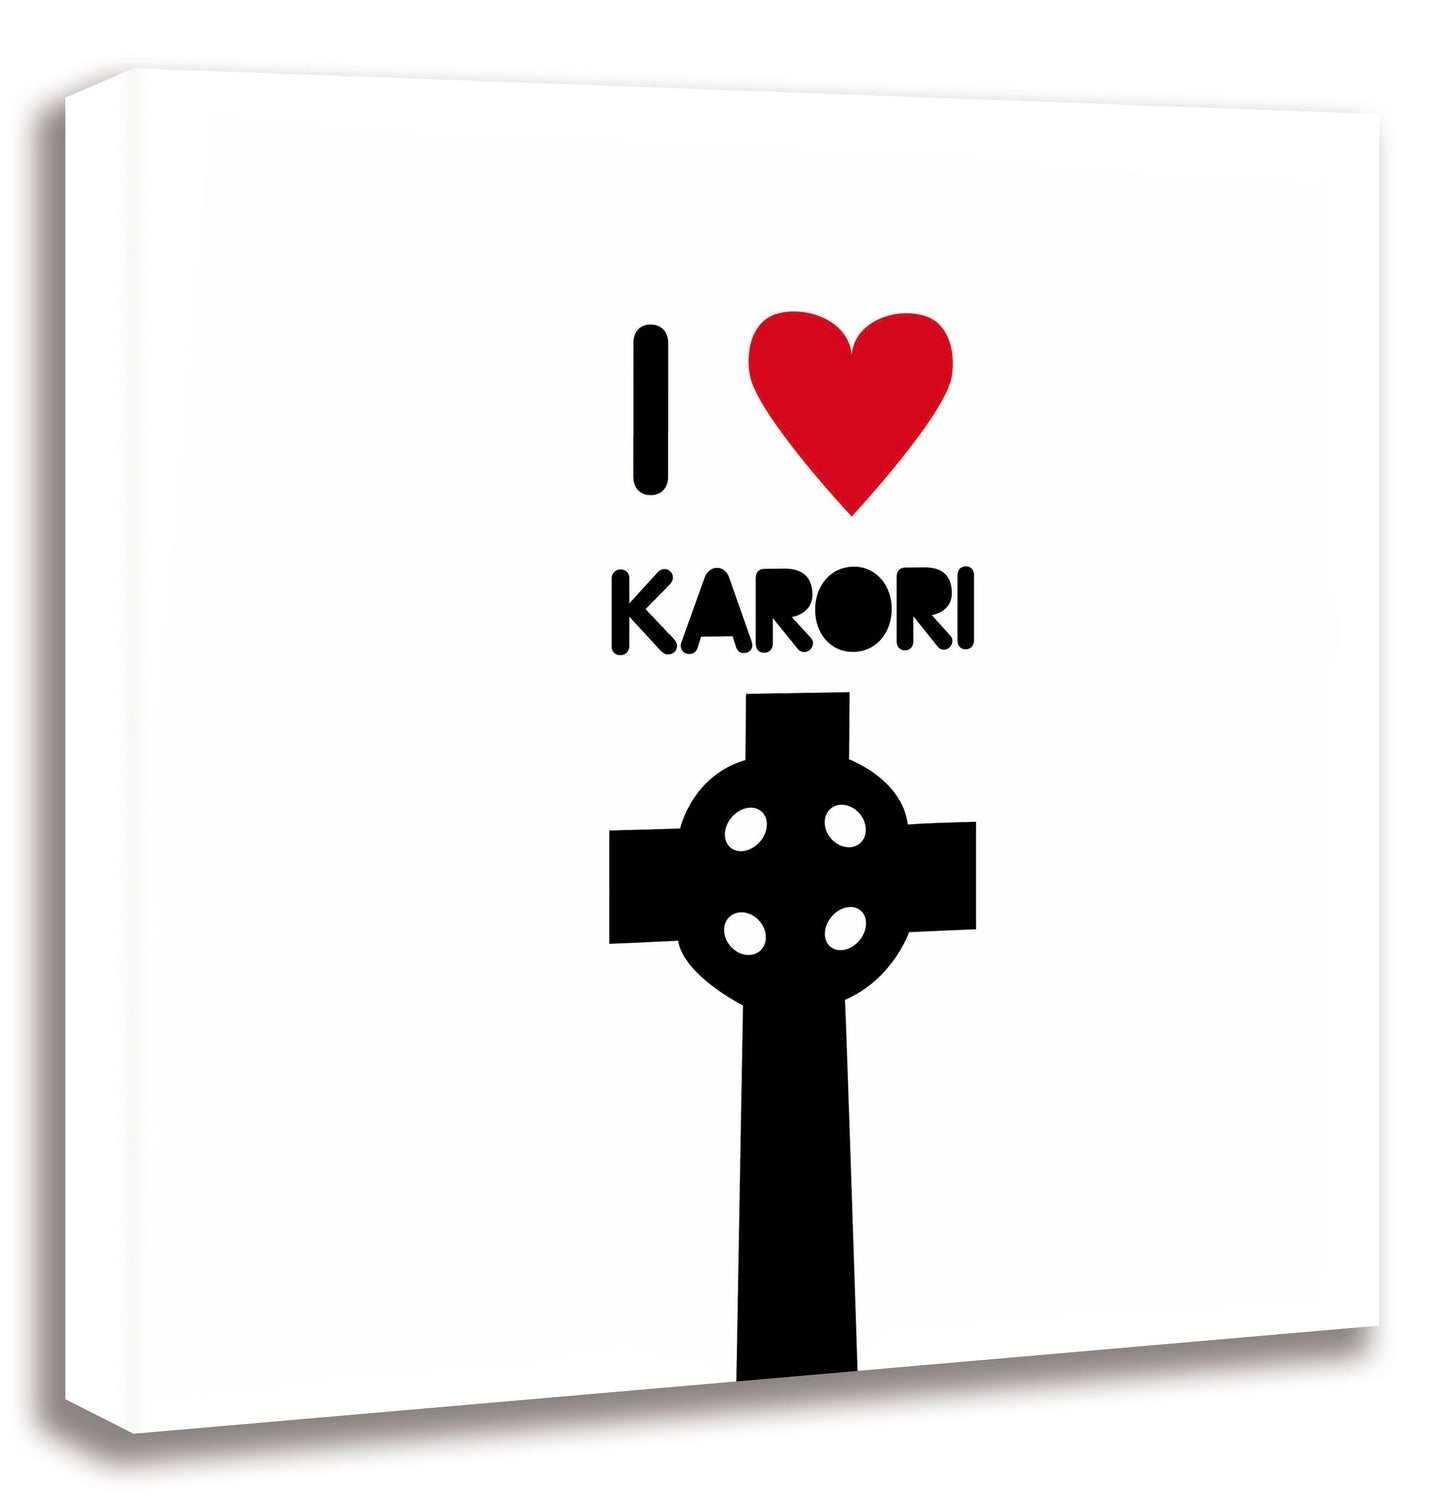 I heart Karori - Zoe Virtue